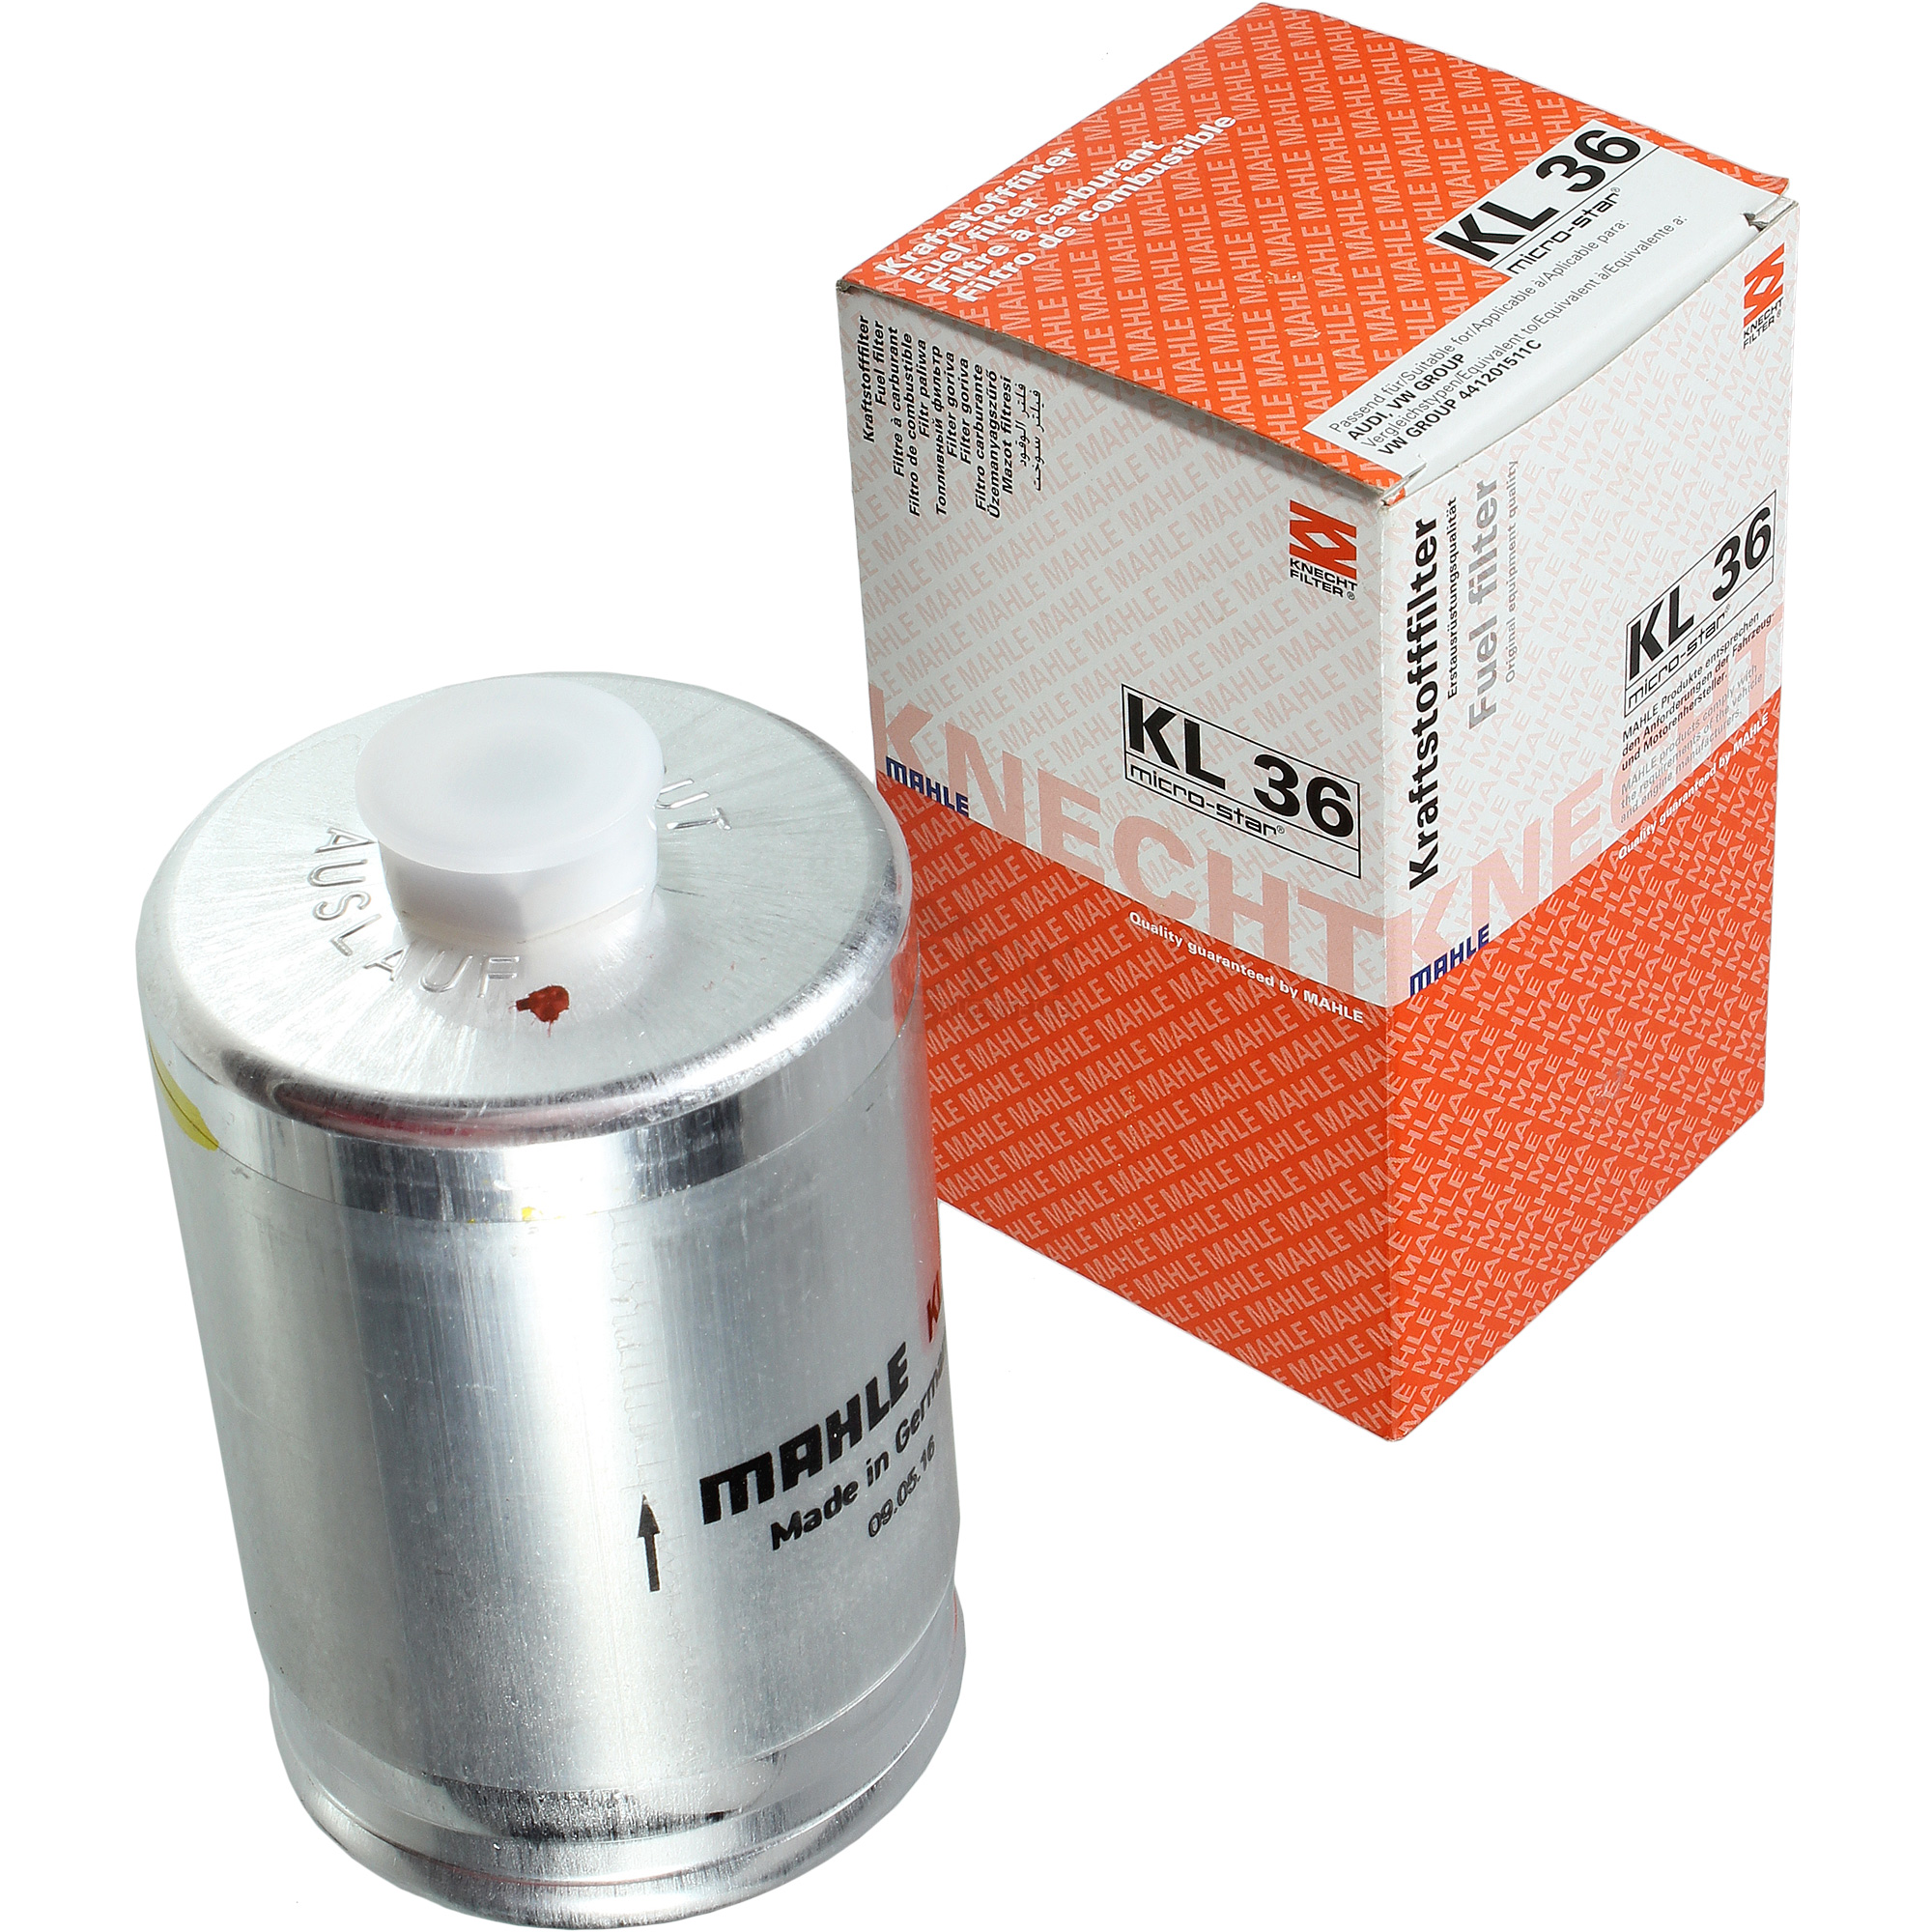 MAHLE / KNECHT Kraftstofffilter KL 36 Fuel Filter